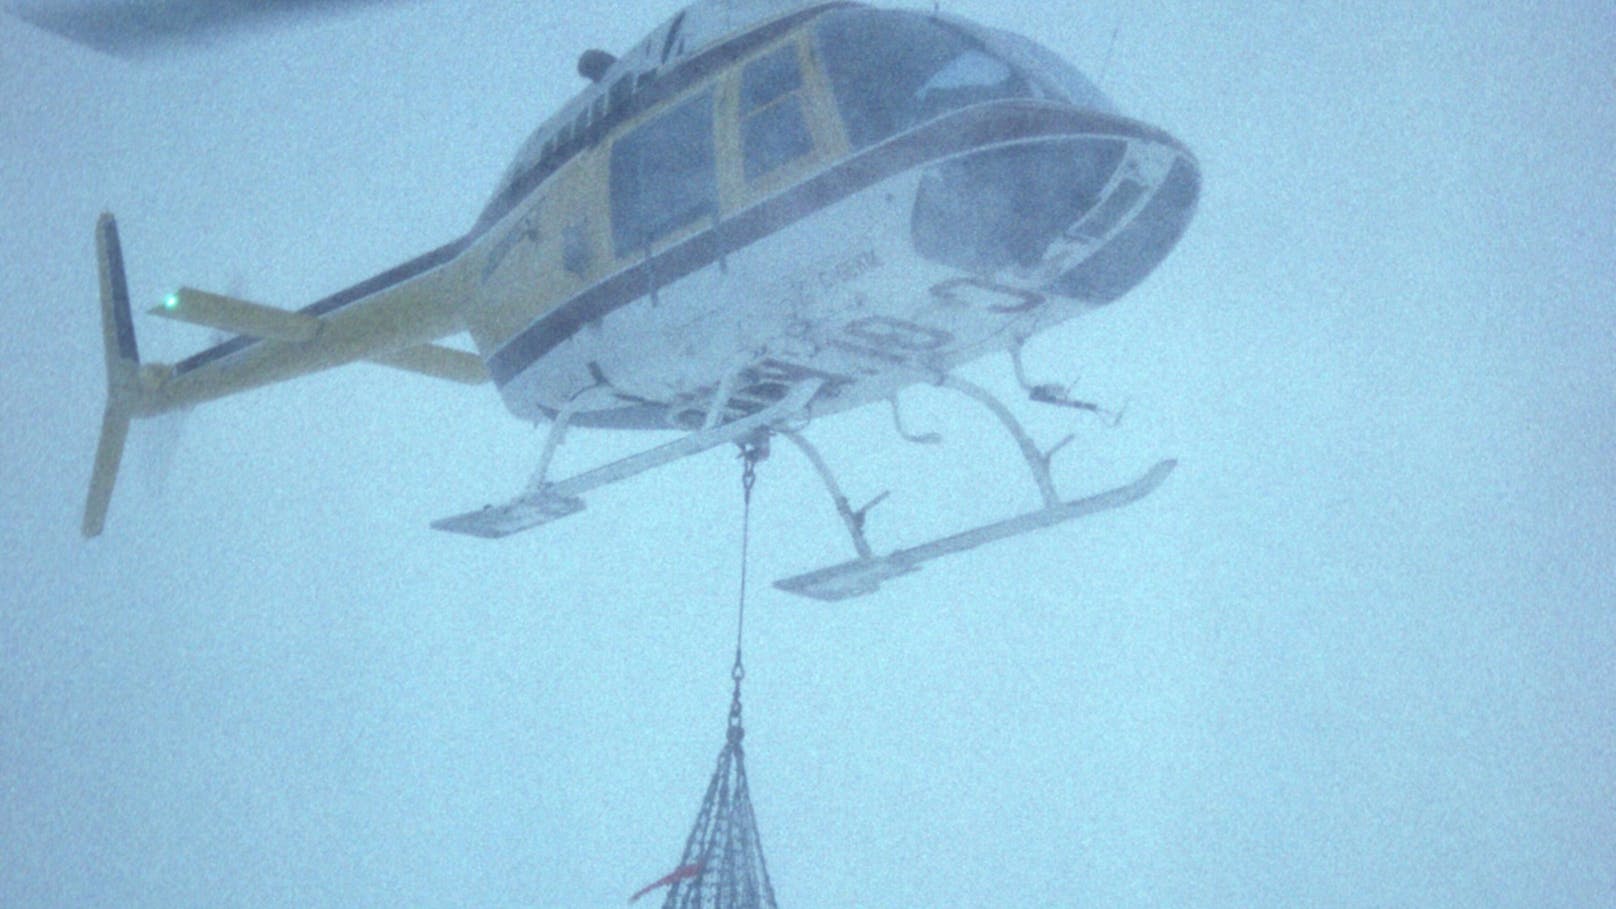 Das Skigebiet Gstaad ließ im alten Jahr per Heli Schnee einfliegen. (Symbolbild)